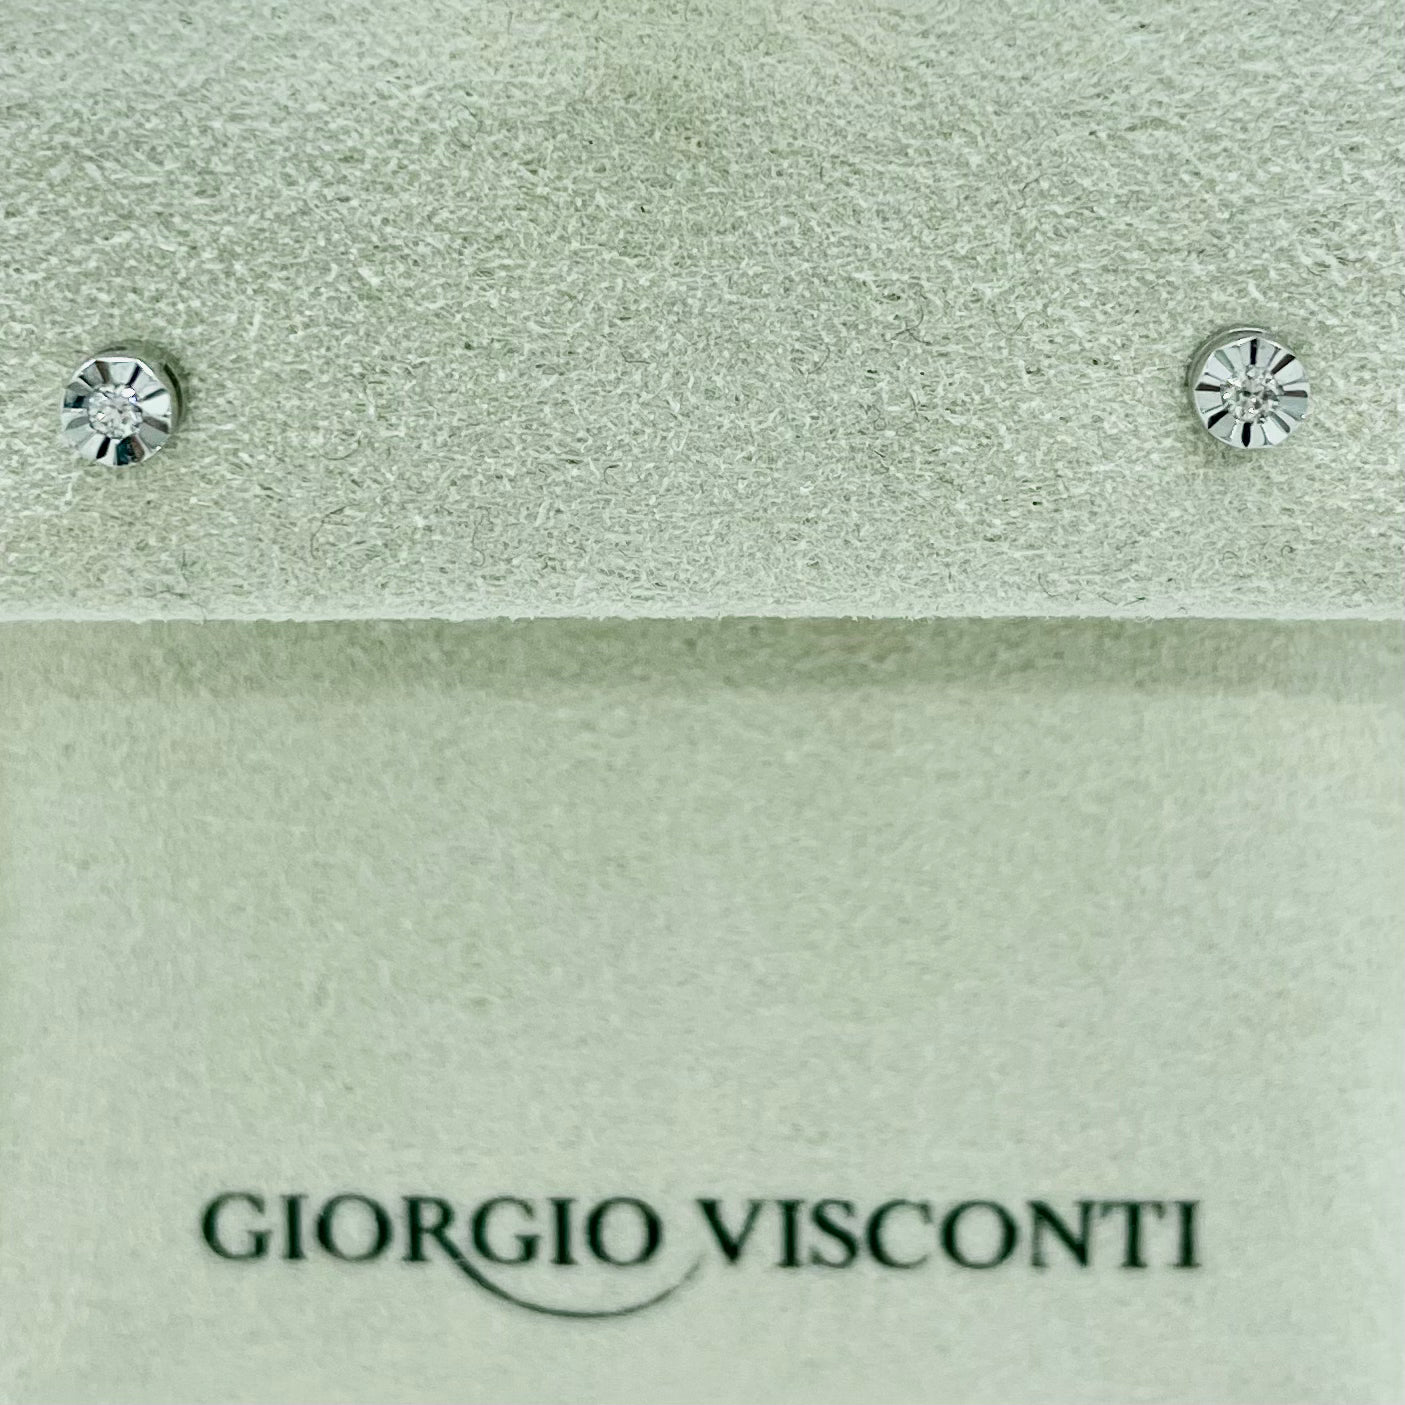 Orecchini punto luce in oro bianco e brillanti  Giorgio Visconti BB39436A